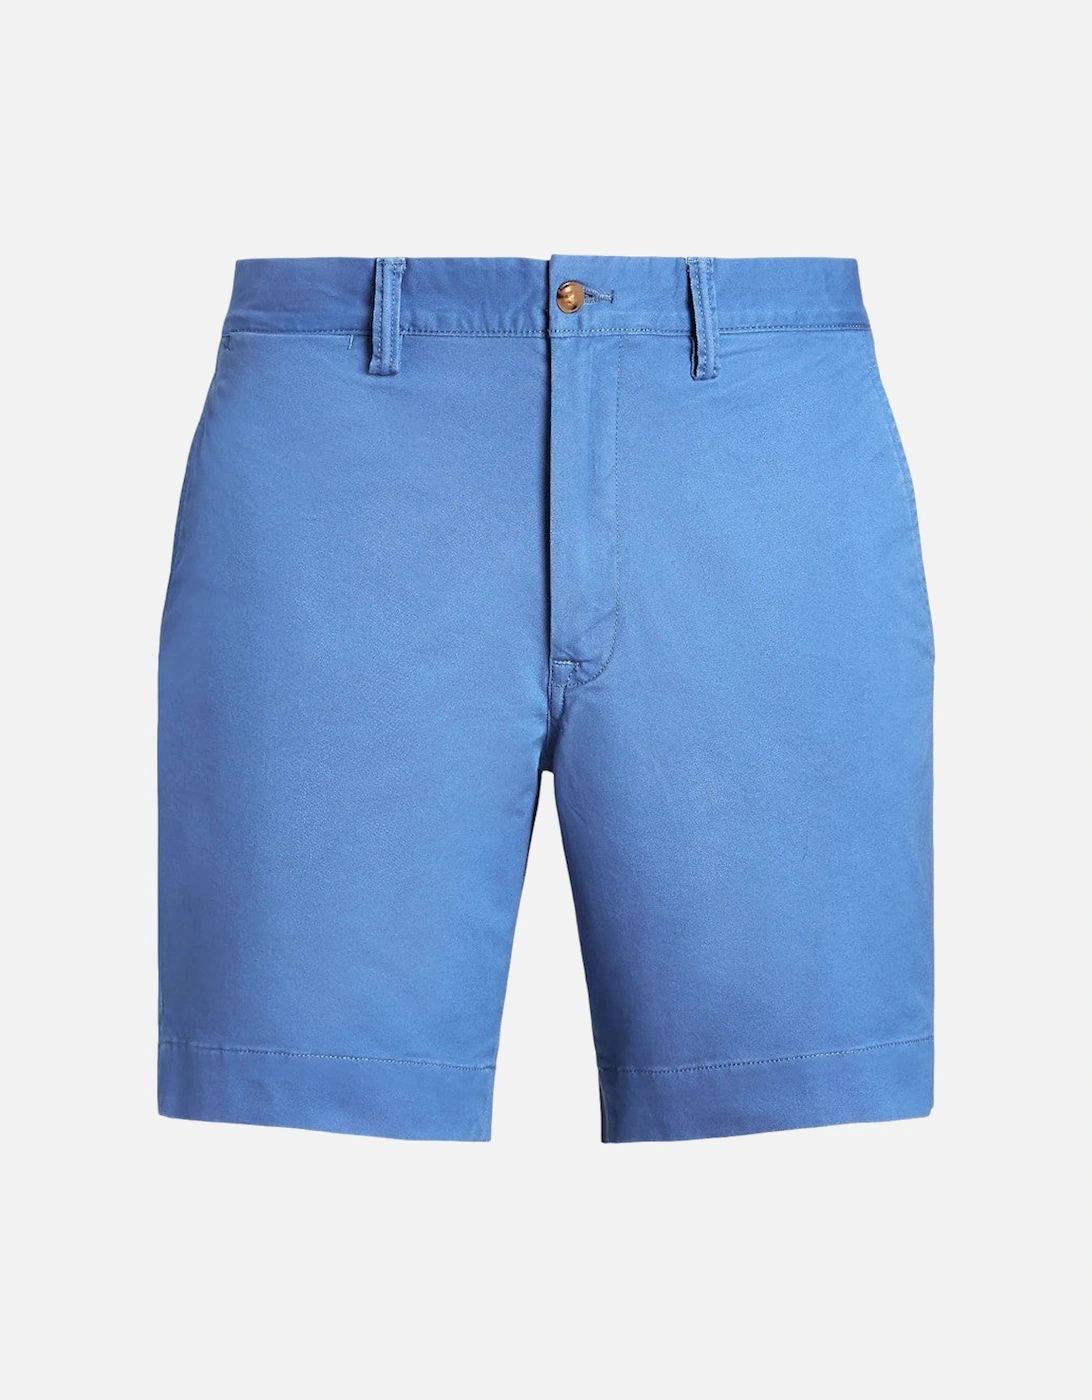 Stretch Twill Shorts 045 Nimes Blue, 4 of 3